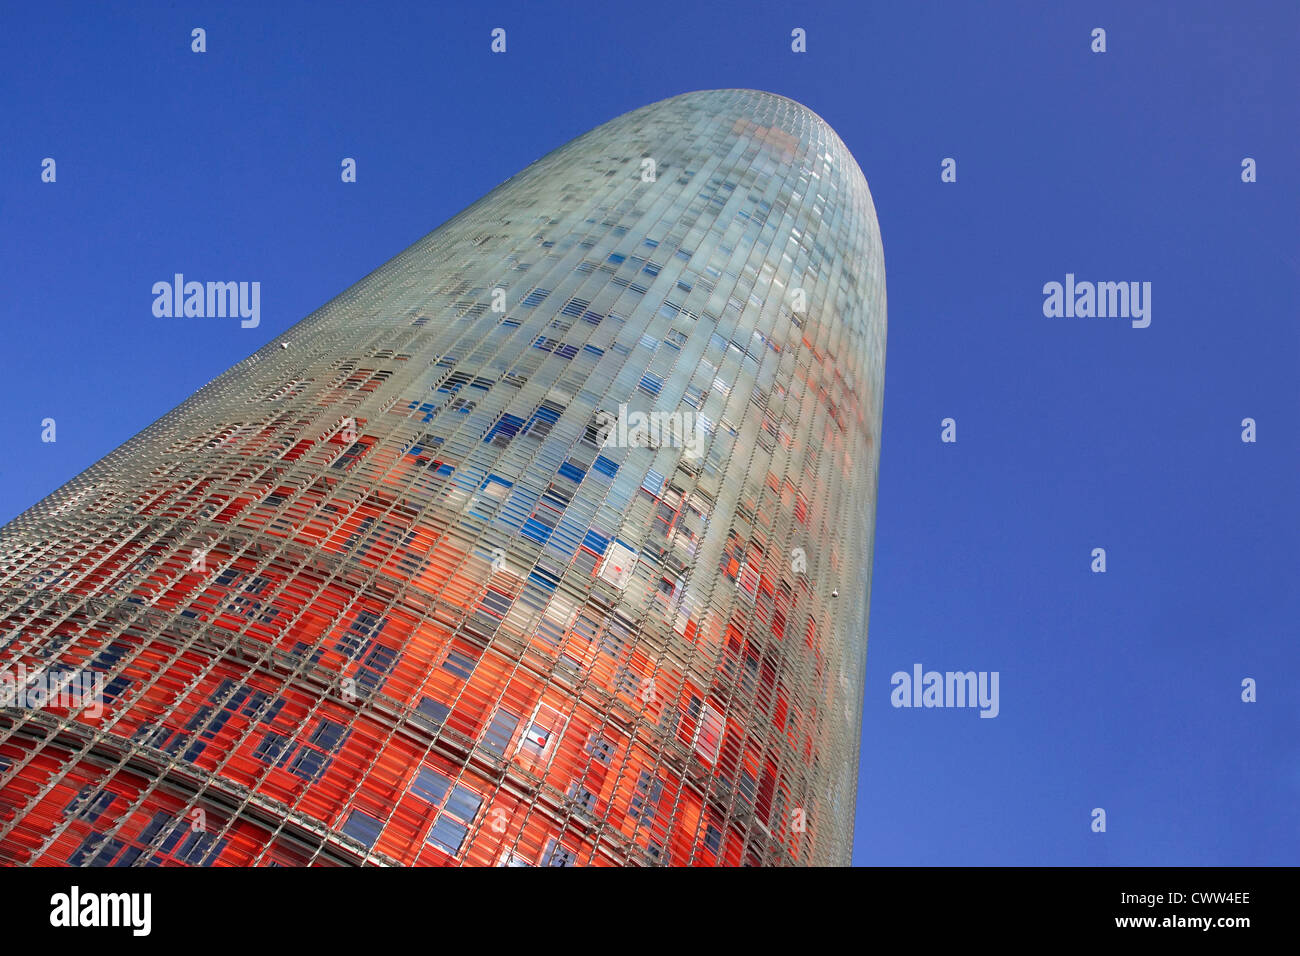 Die 144 Meter Turm Torre Agbar in Barcelona Spanien entworfen von französischen Architekten Jean Nouvel 2004. Der Hauptauftragnehmer Dragados. Stockfoto